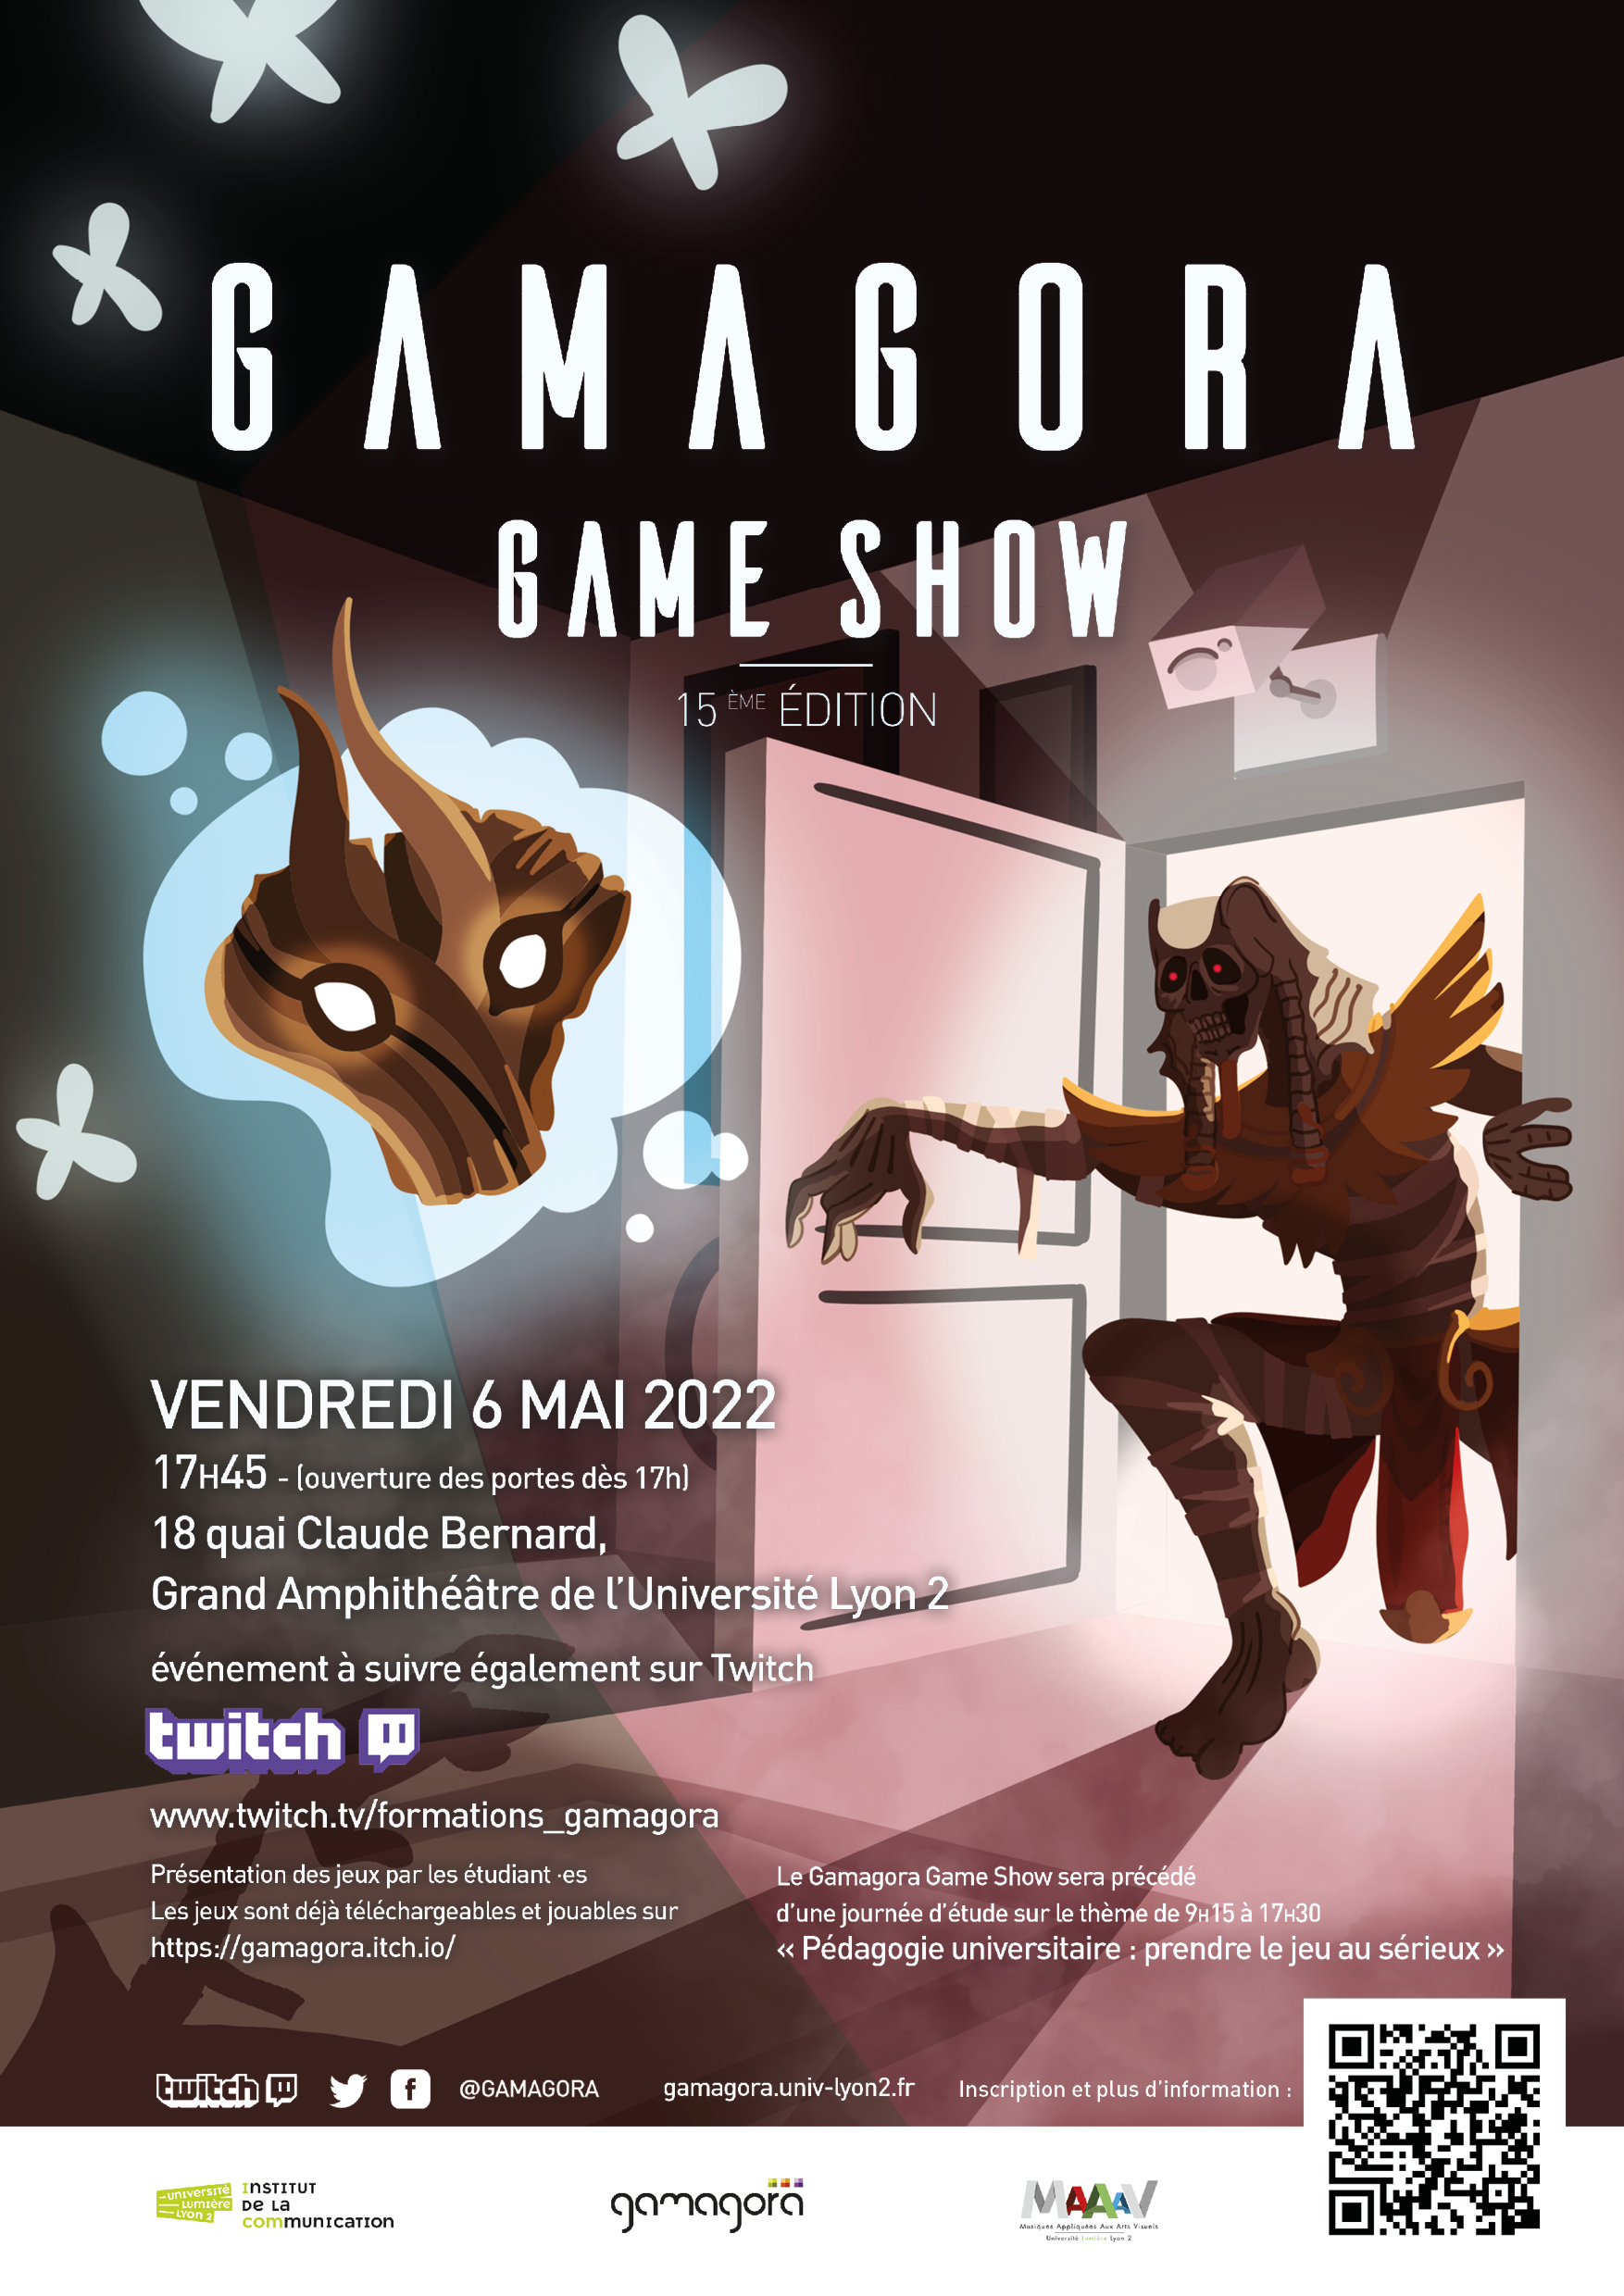 CP - La 15e édition du Gamagora Game Show, une première en présentiel depuis 2020